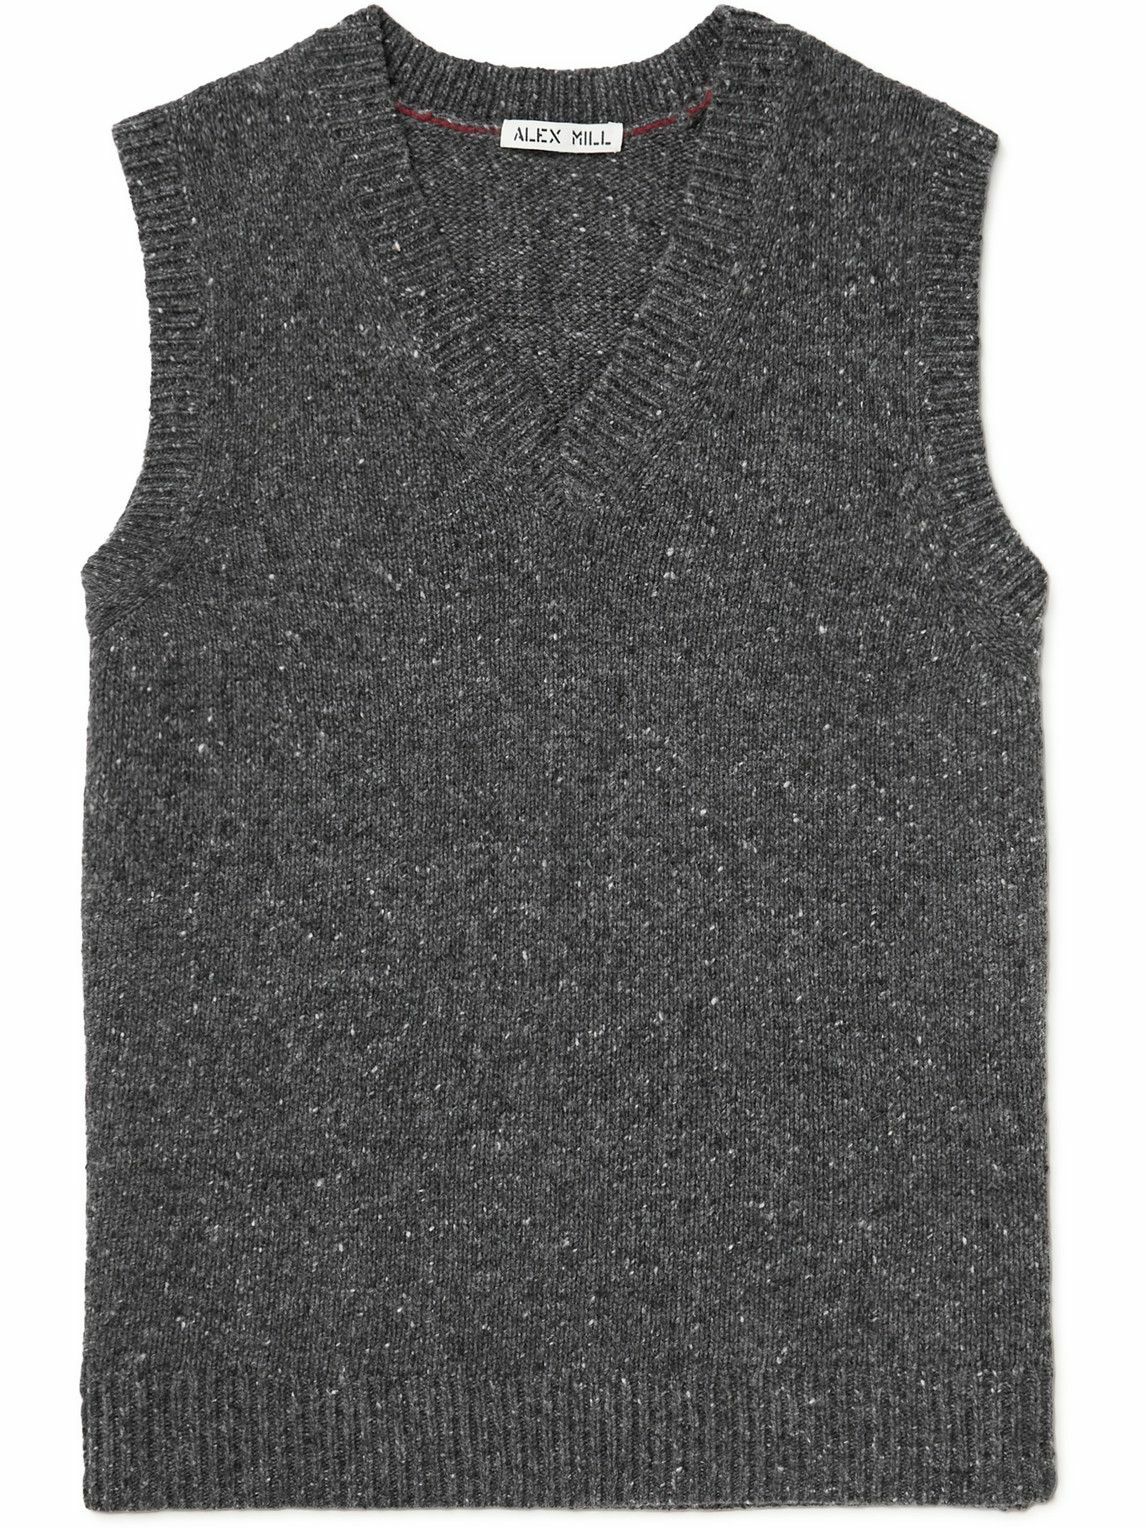 Alex Mill - Donegal Merino Wool-Blend Sweater Vest - Gray Alex Mill